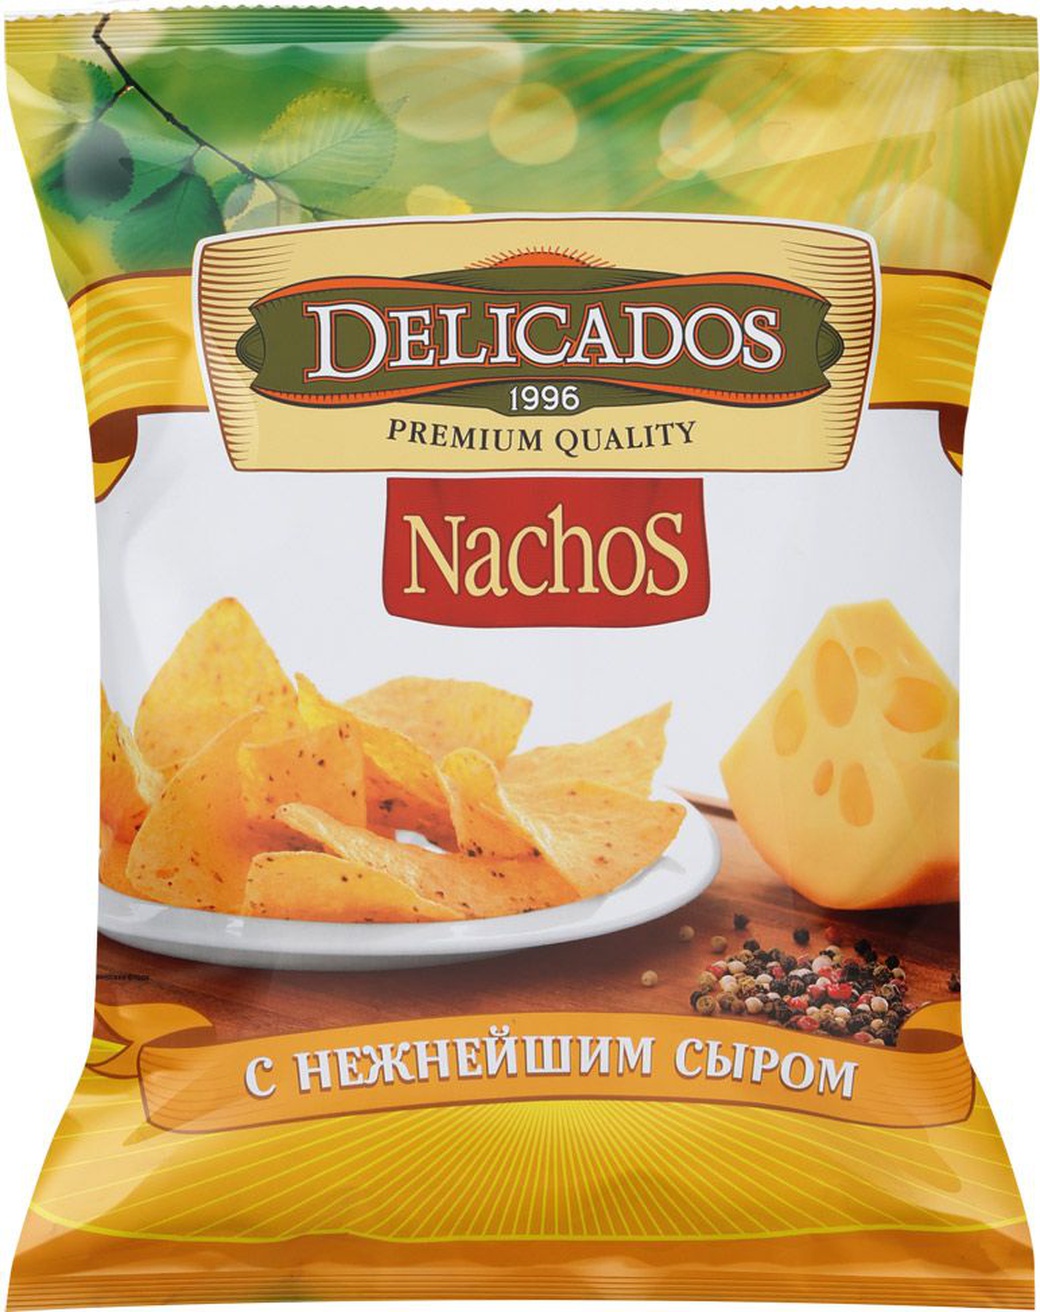 Начос Delicados сыр 150г фото